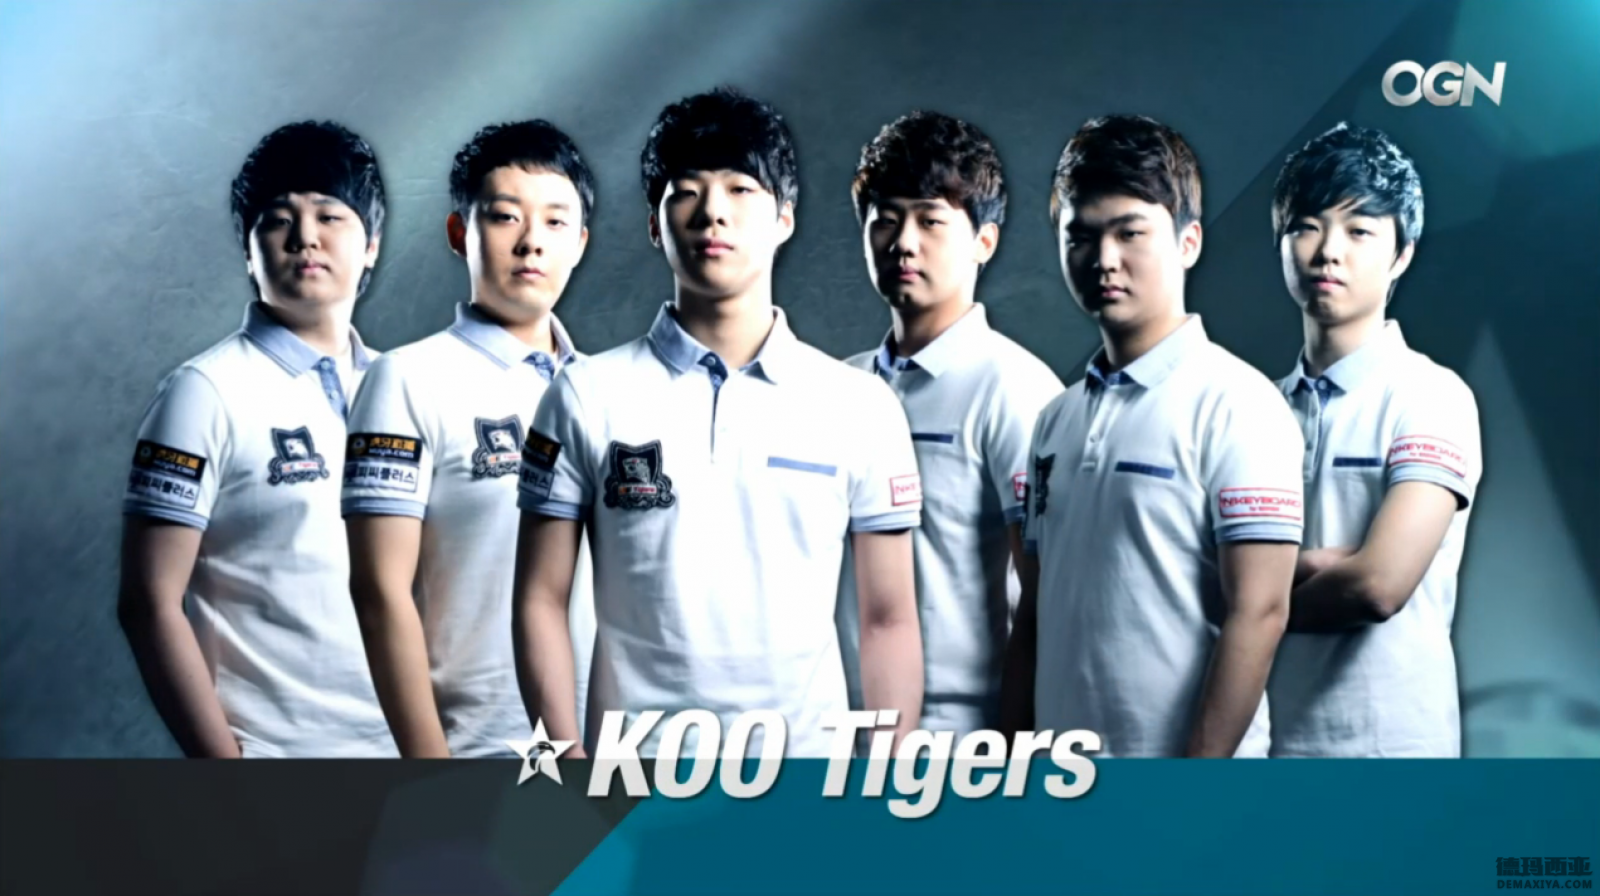 koo tigers.png